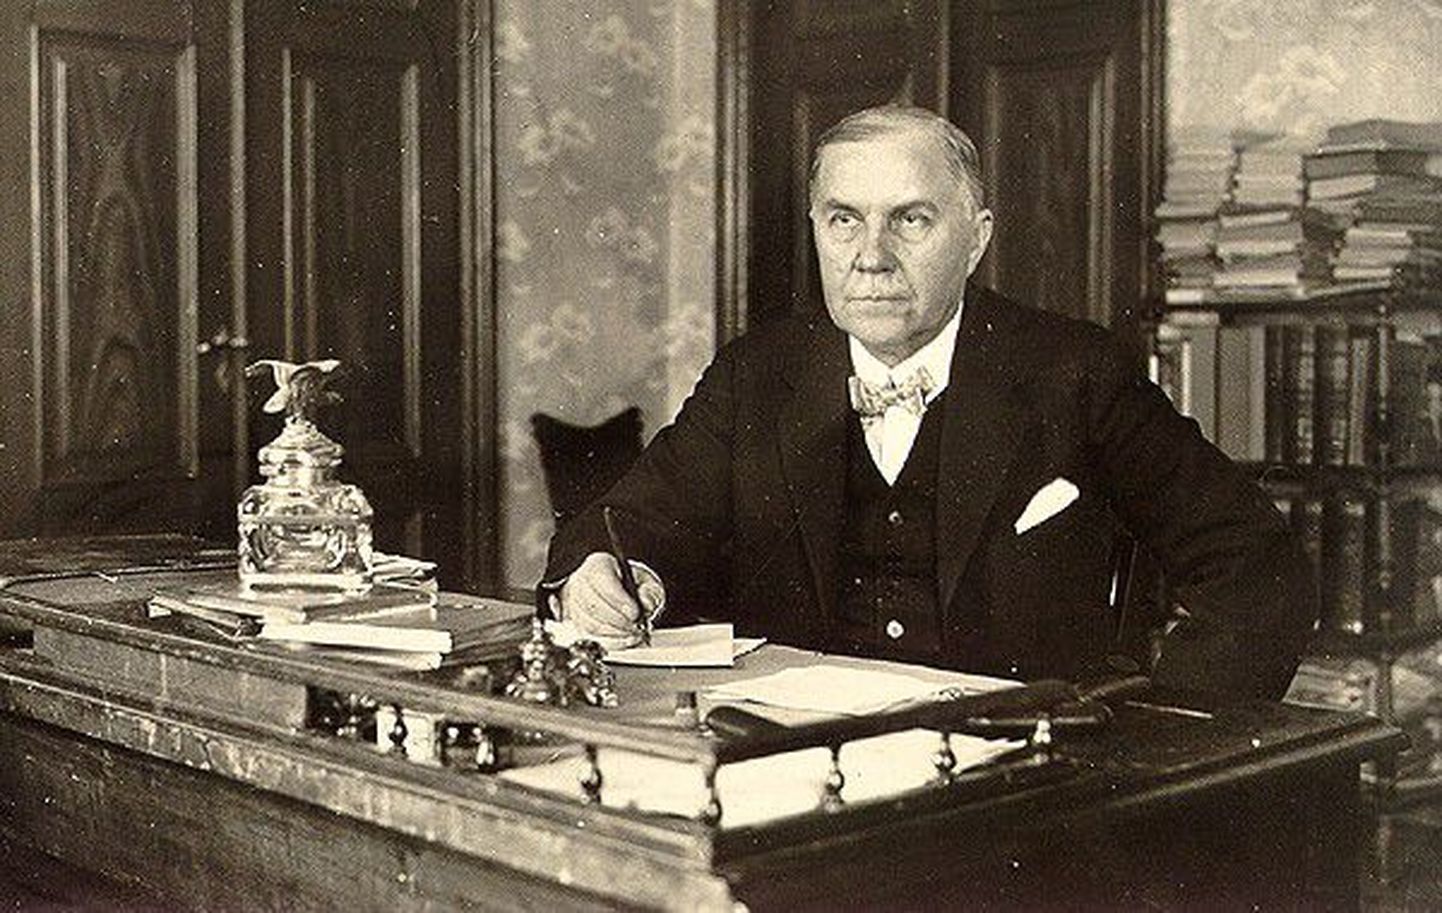 Eduard Vilde töölaua taga. Pilt on võetud 1925. aastal. Eestis.